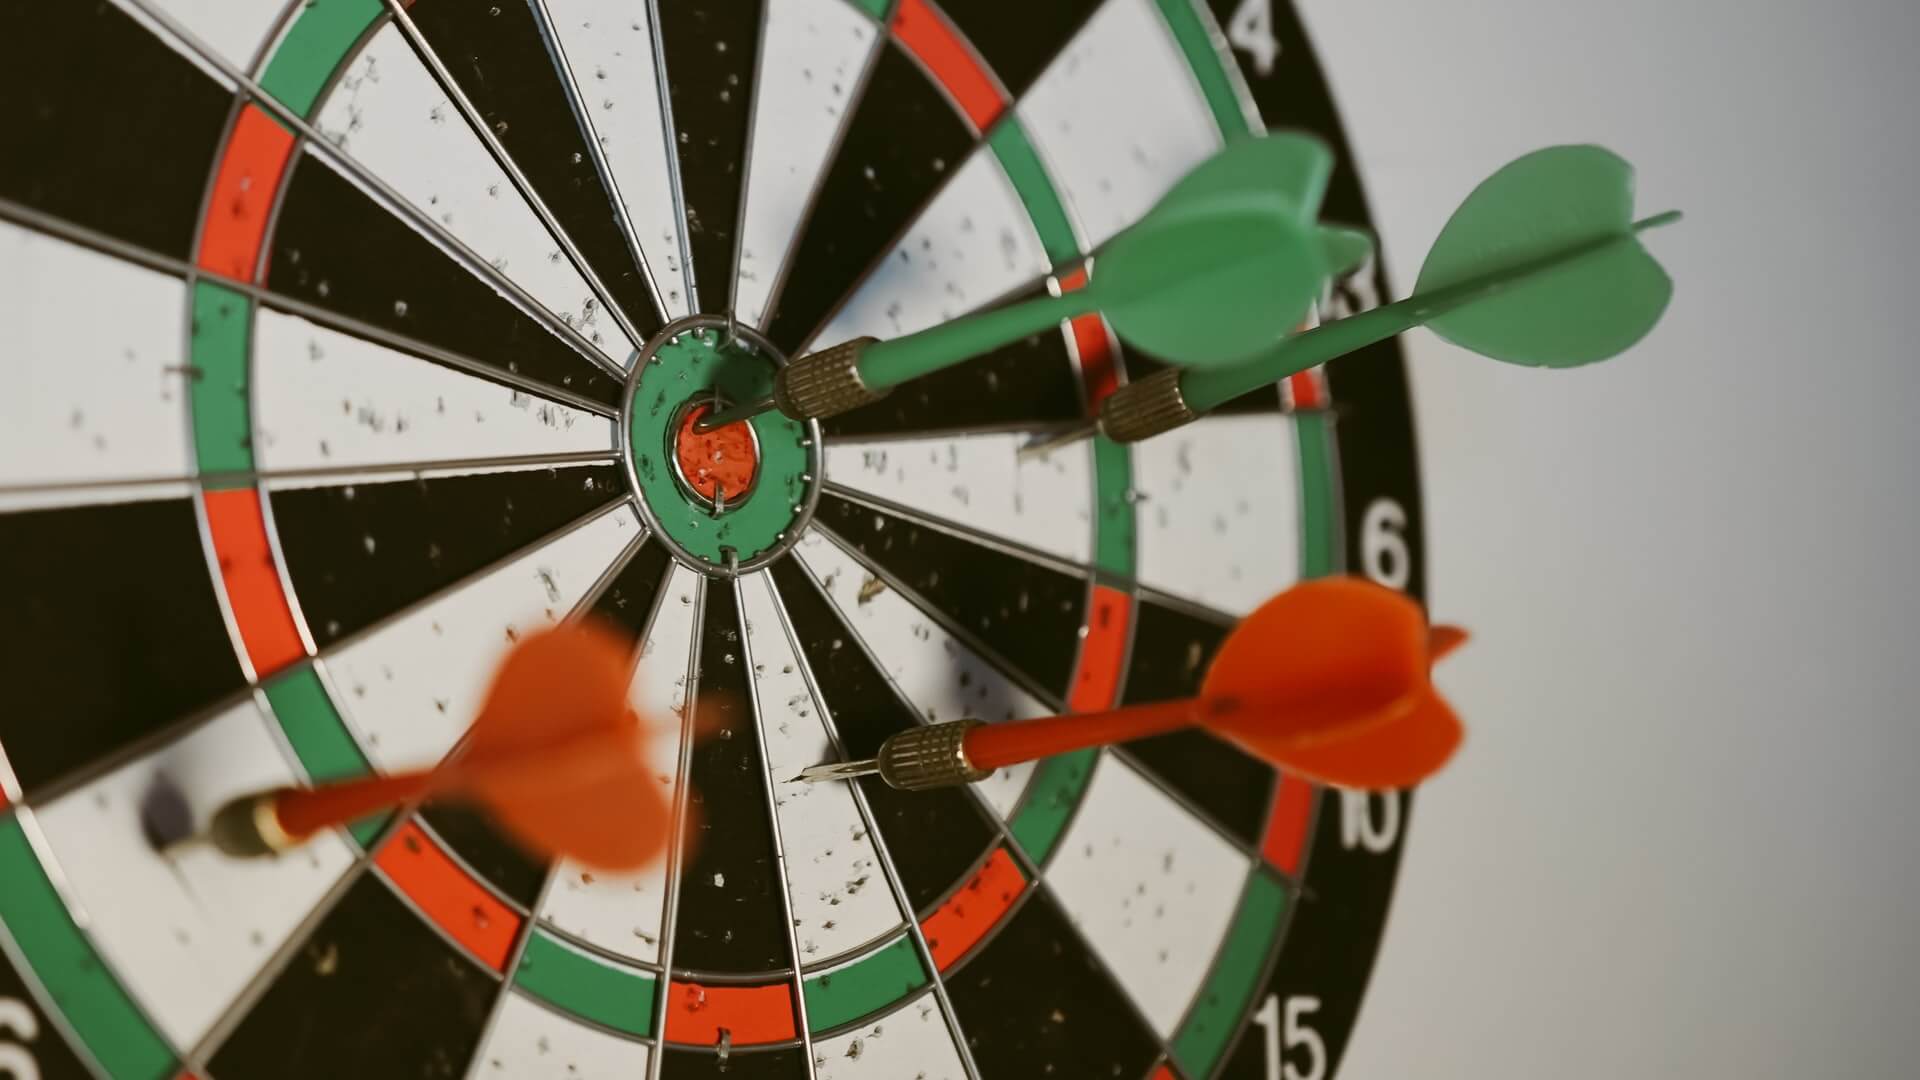 Darts in a dartboard and in bullseye